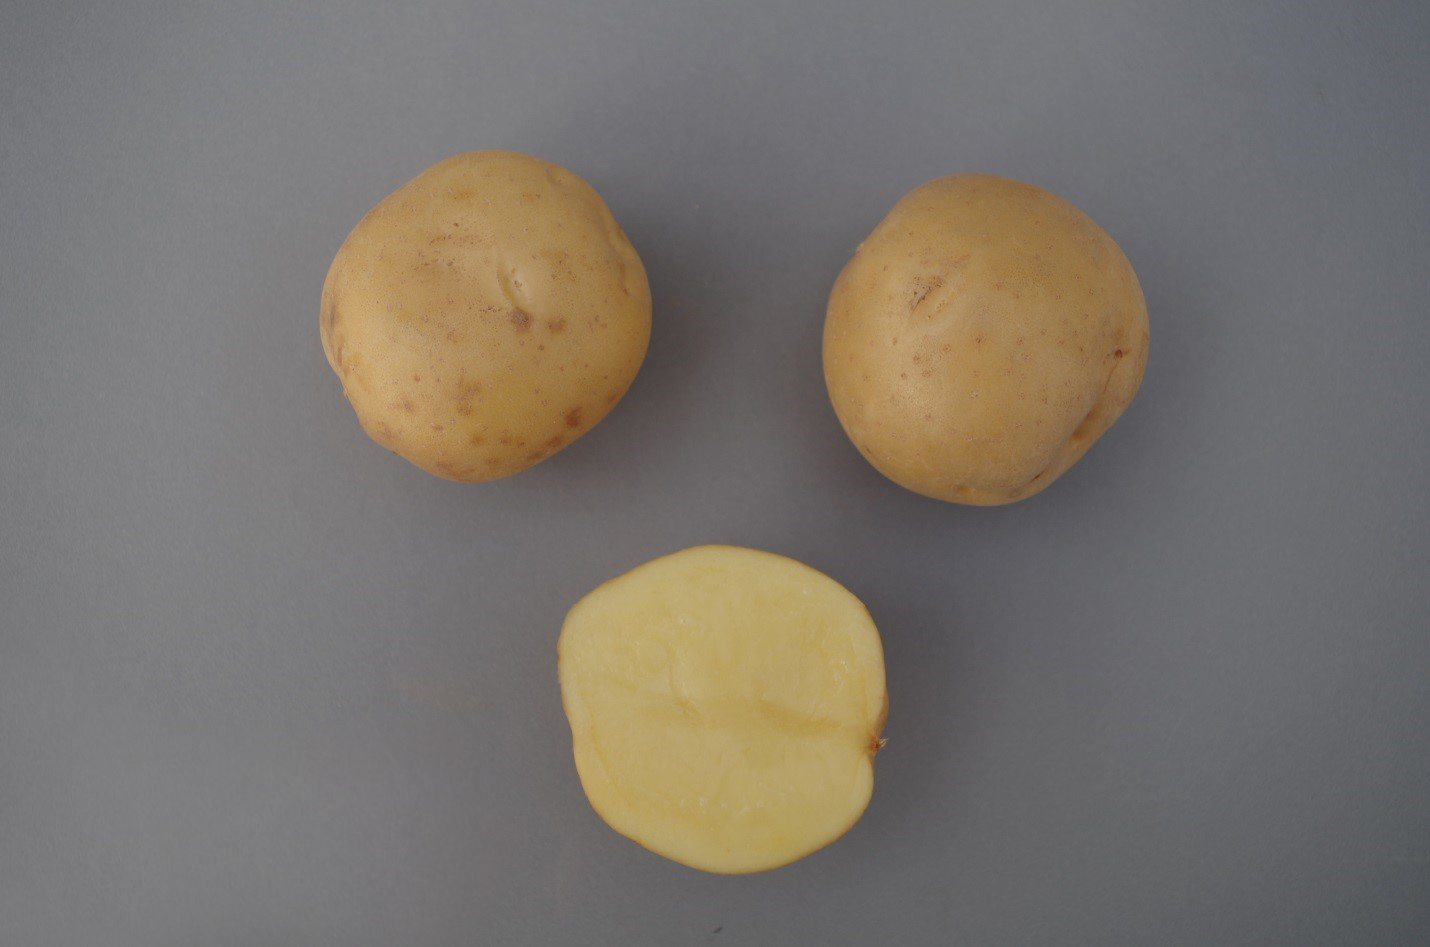 Deux pommes de terre entières et une pomme de terre coupée en deux.